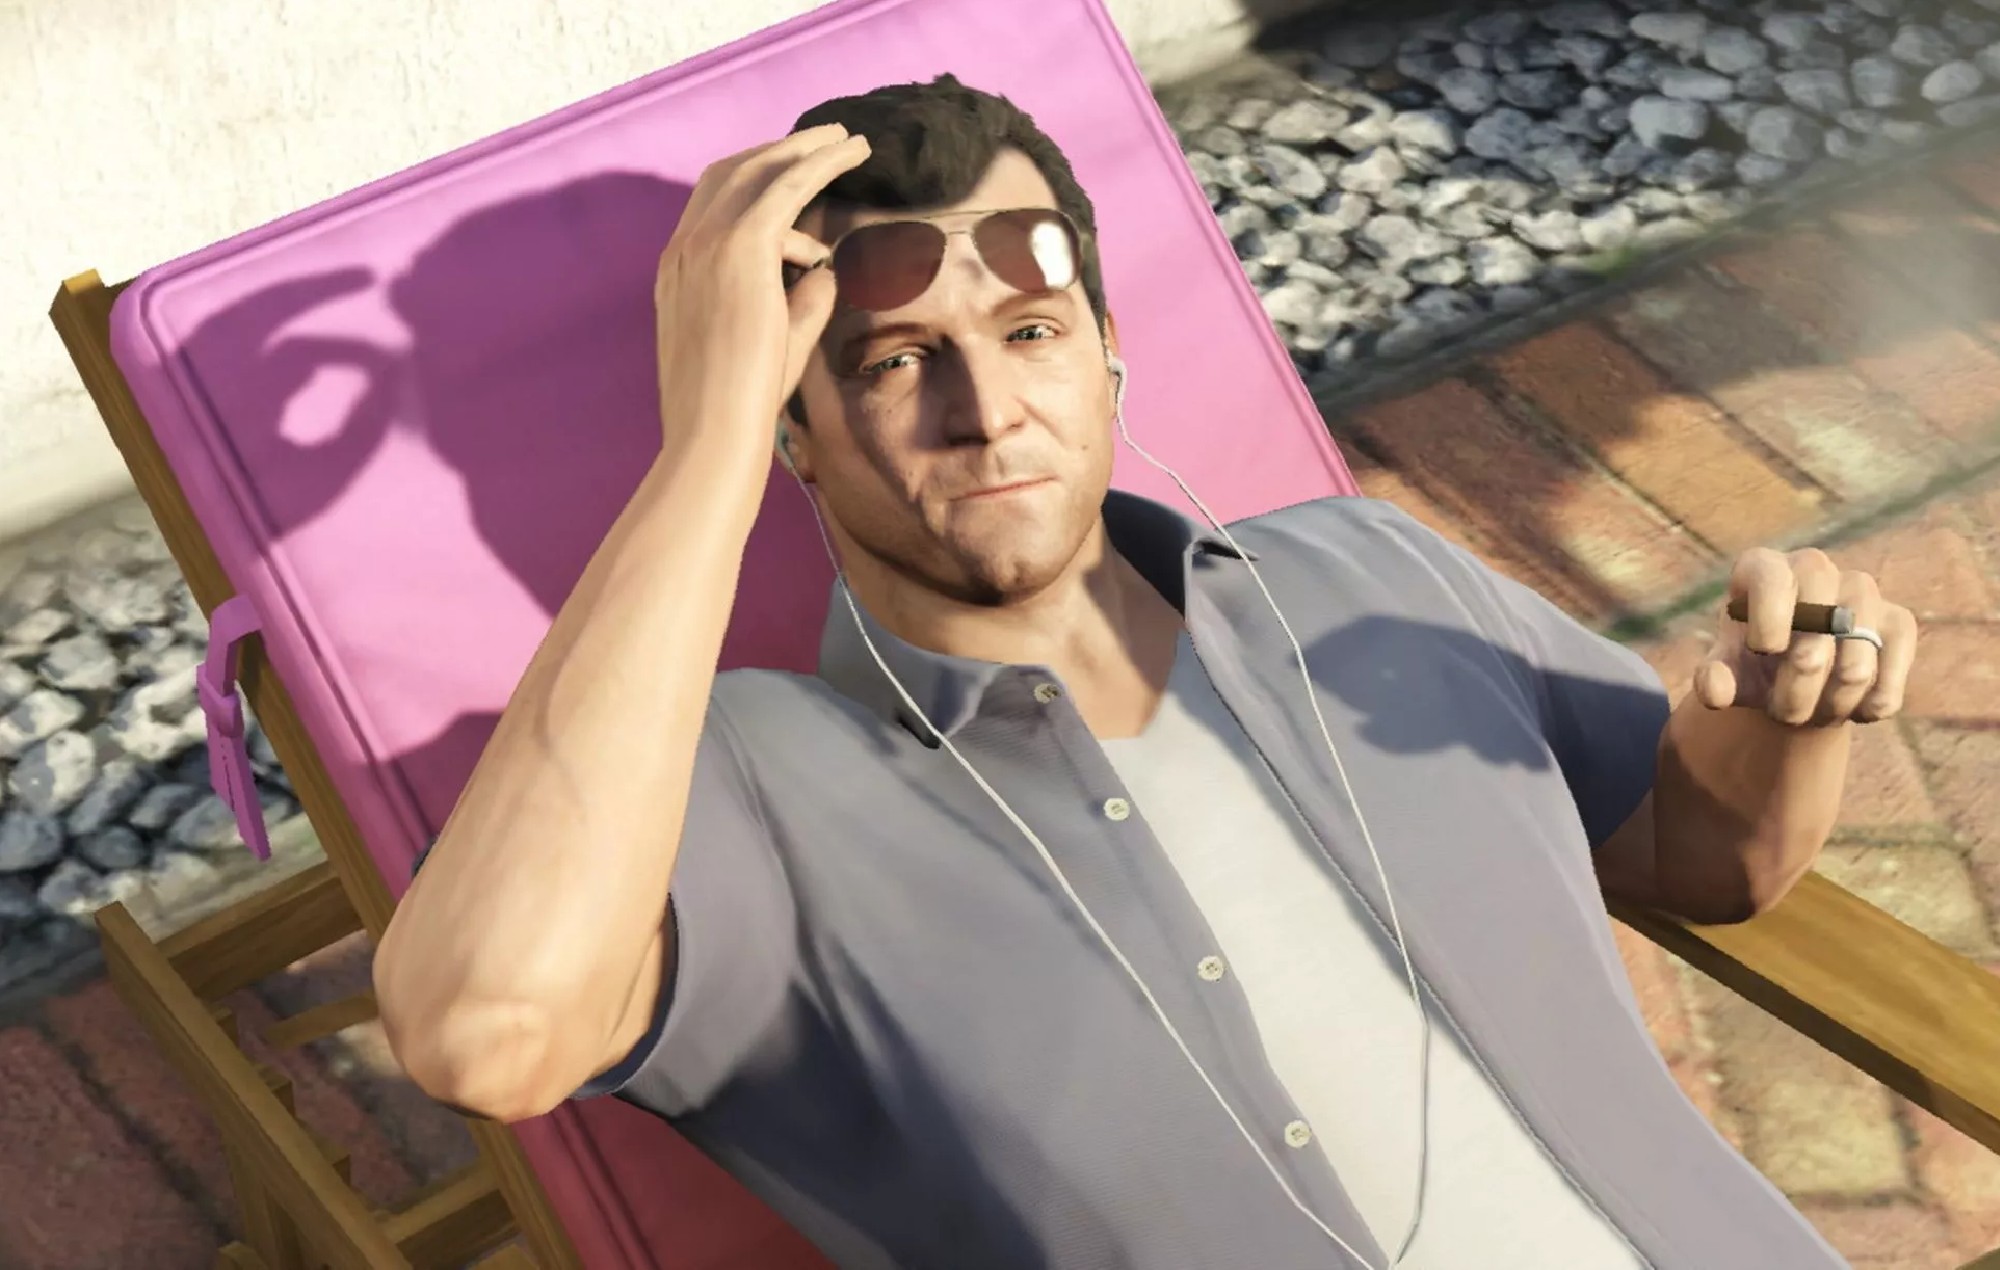 La teoría de la luna de 'Grand Theft Auto 6' de unos fans "desesperados" está siendo ridiculizada